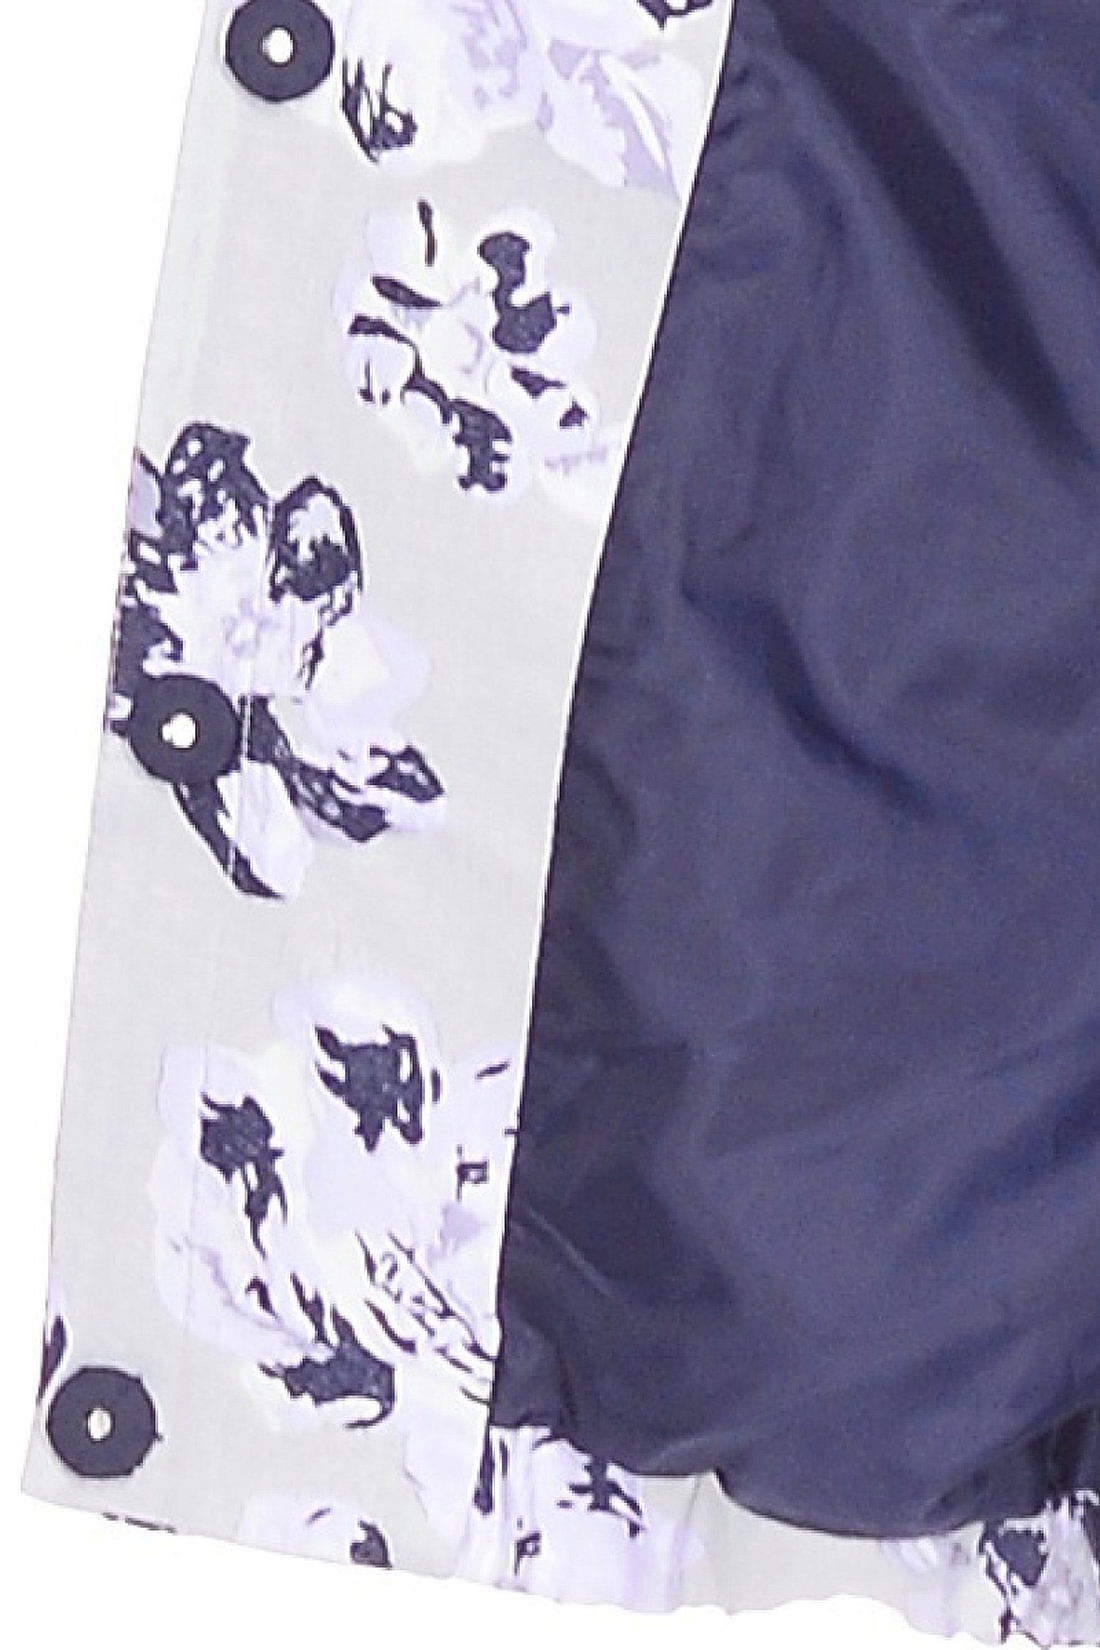 Ветровка с цветочными мотивами (арт. baon B108013), размер L Ветровка с цветочными мотивами (арт. baon B108013) - фото 3